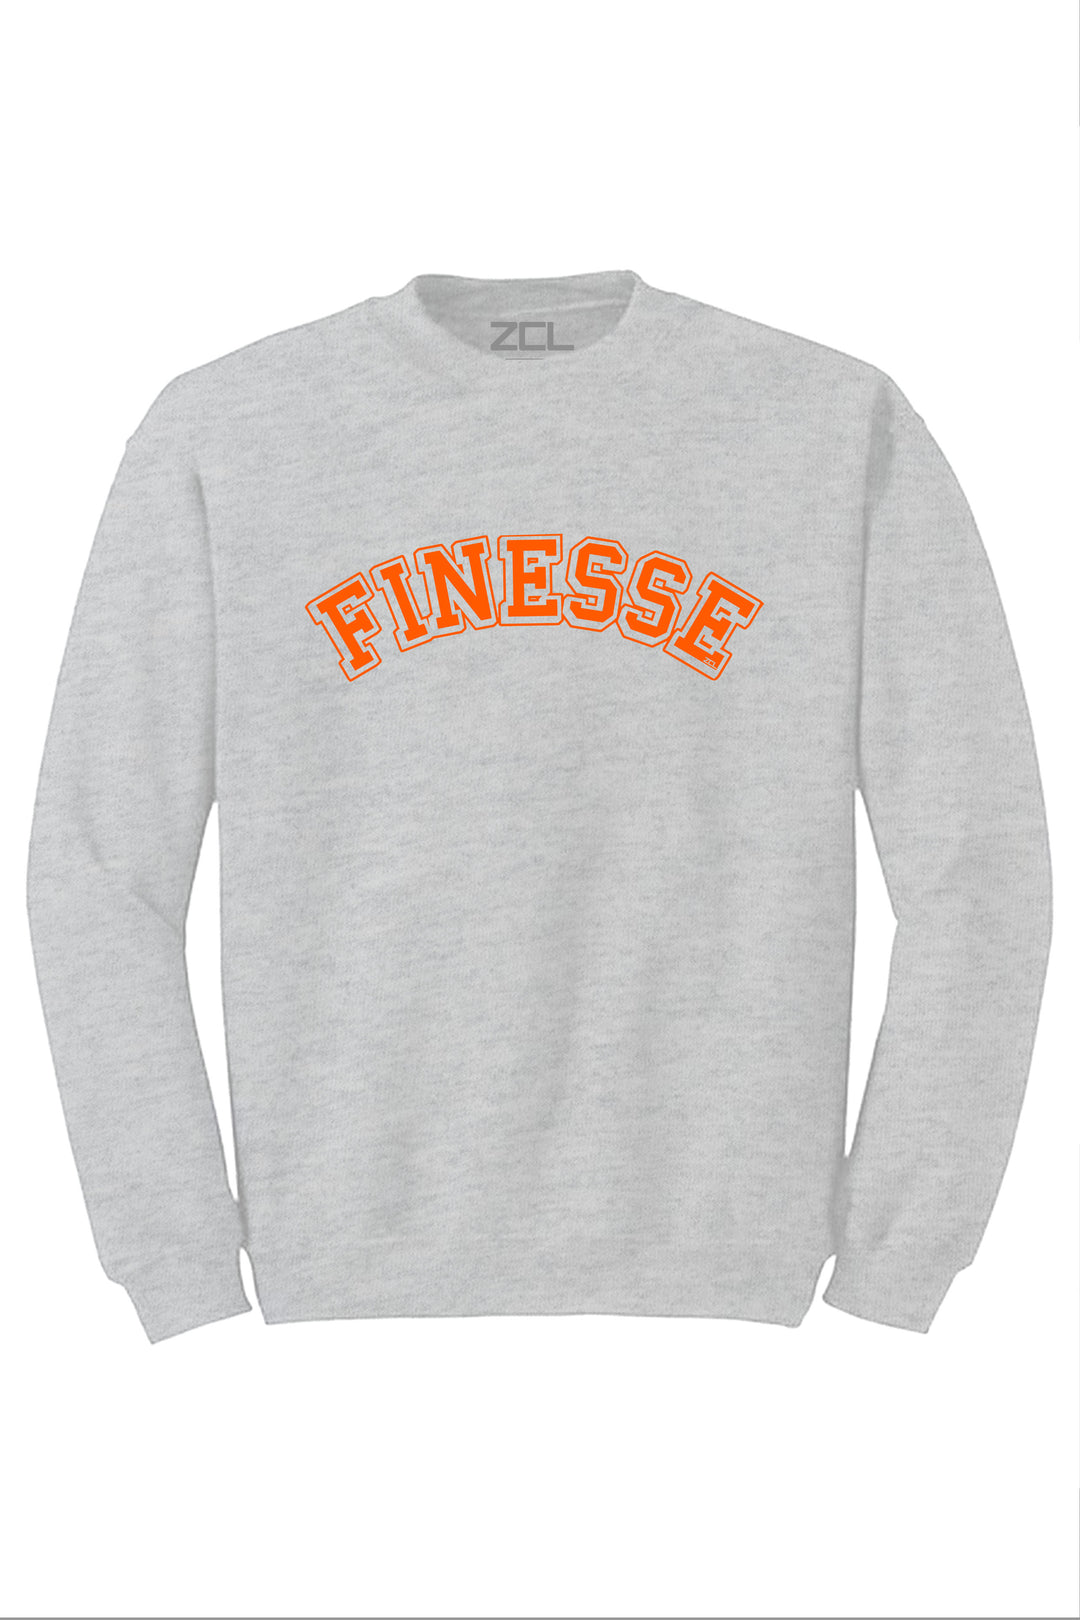 Finesse Crewneck Sweatshirt (Orange Logo) - Zamage